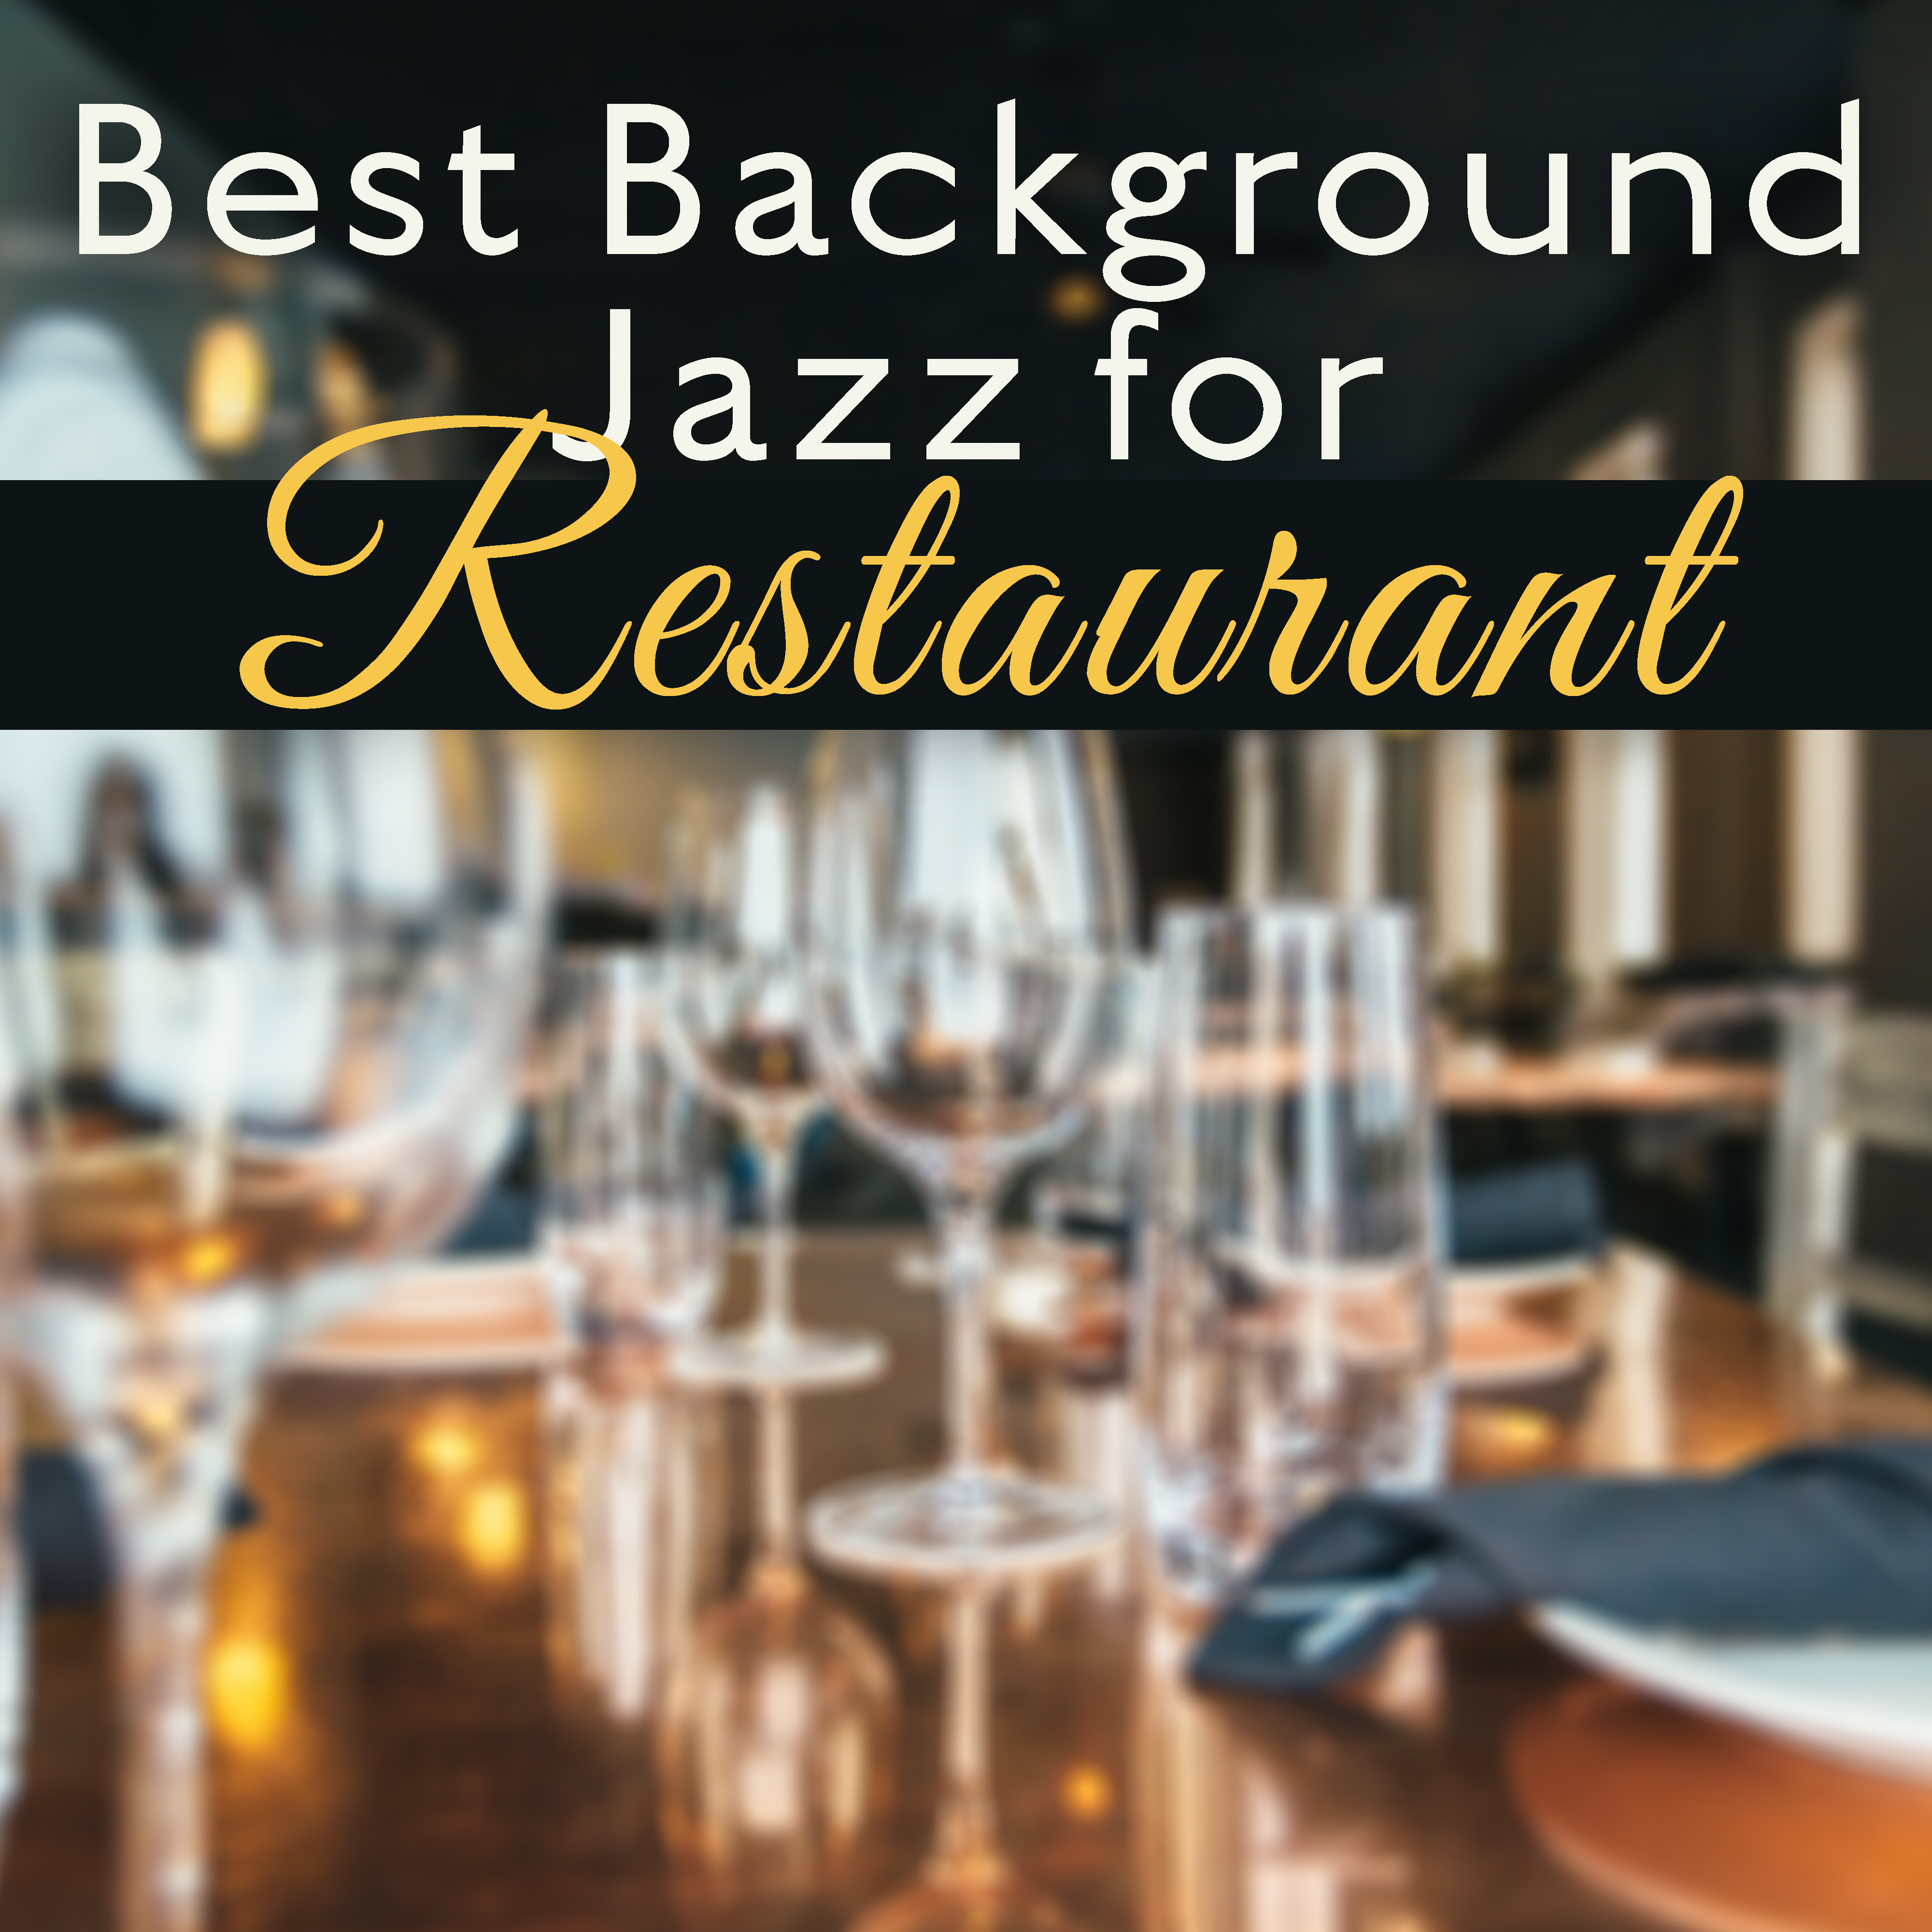 Best Background Jazz for Restaurant – Calm Jazz Music, Stress Relief, Peaceful Background Music, Cafe Restaurant Jazz